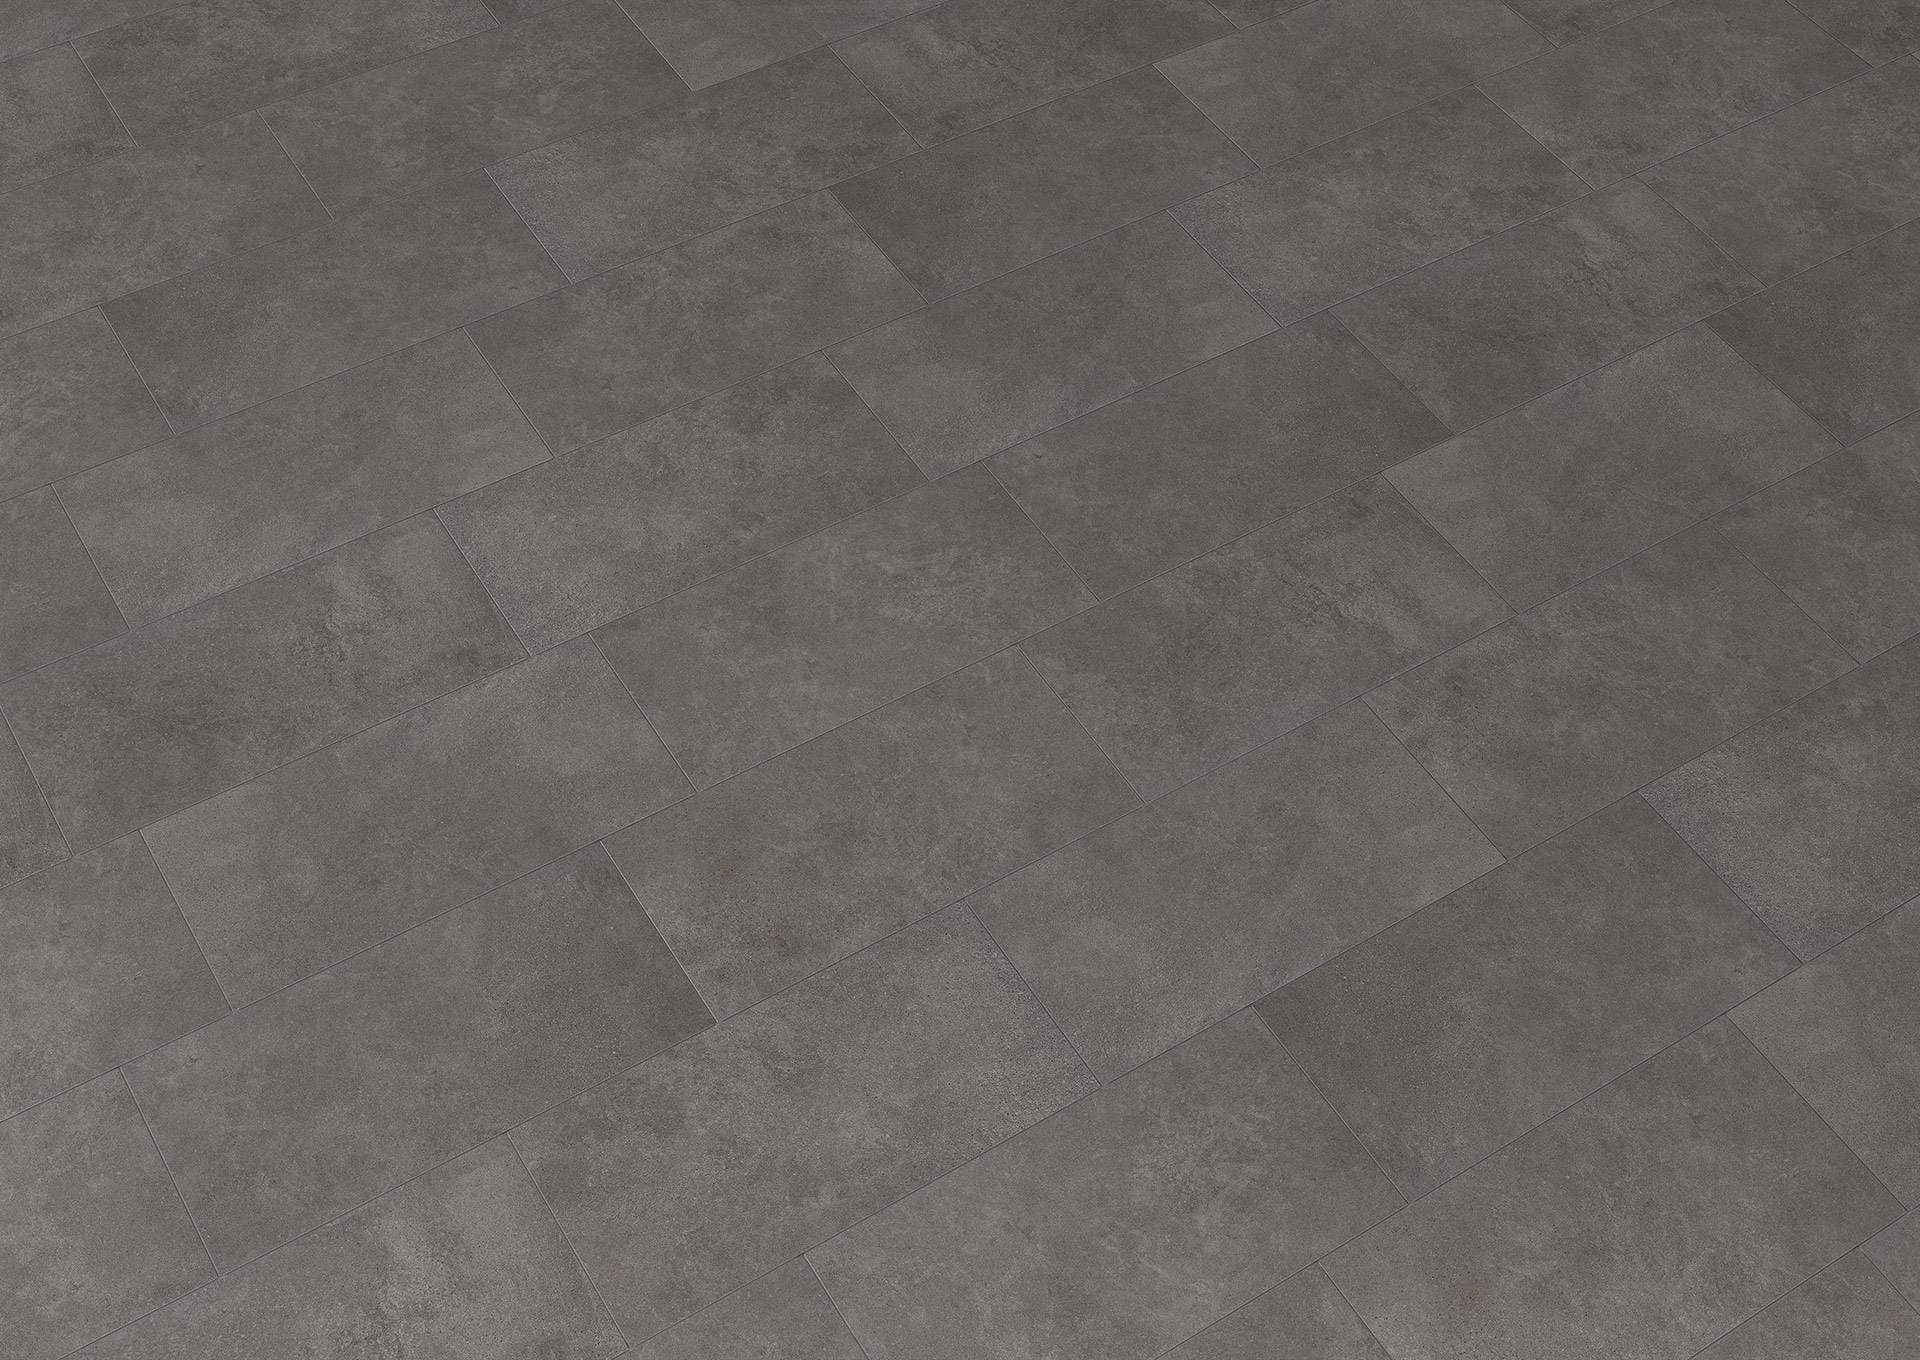 Duncan anthracite 30x60 flooring